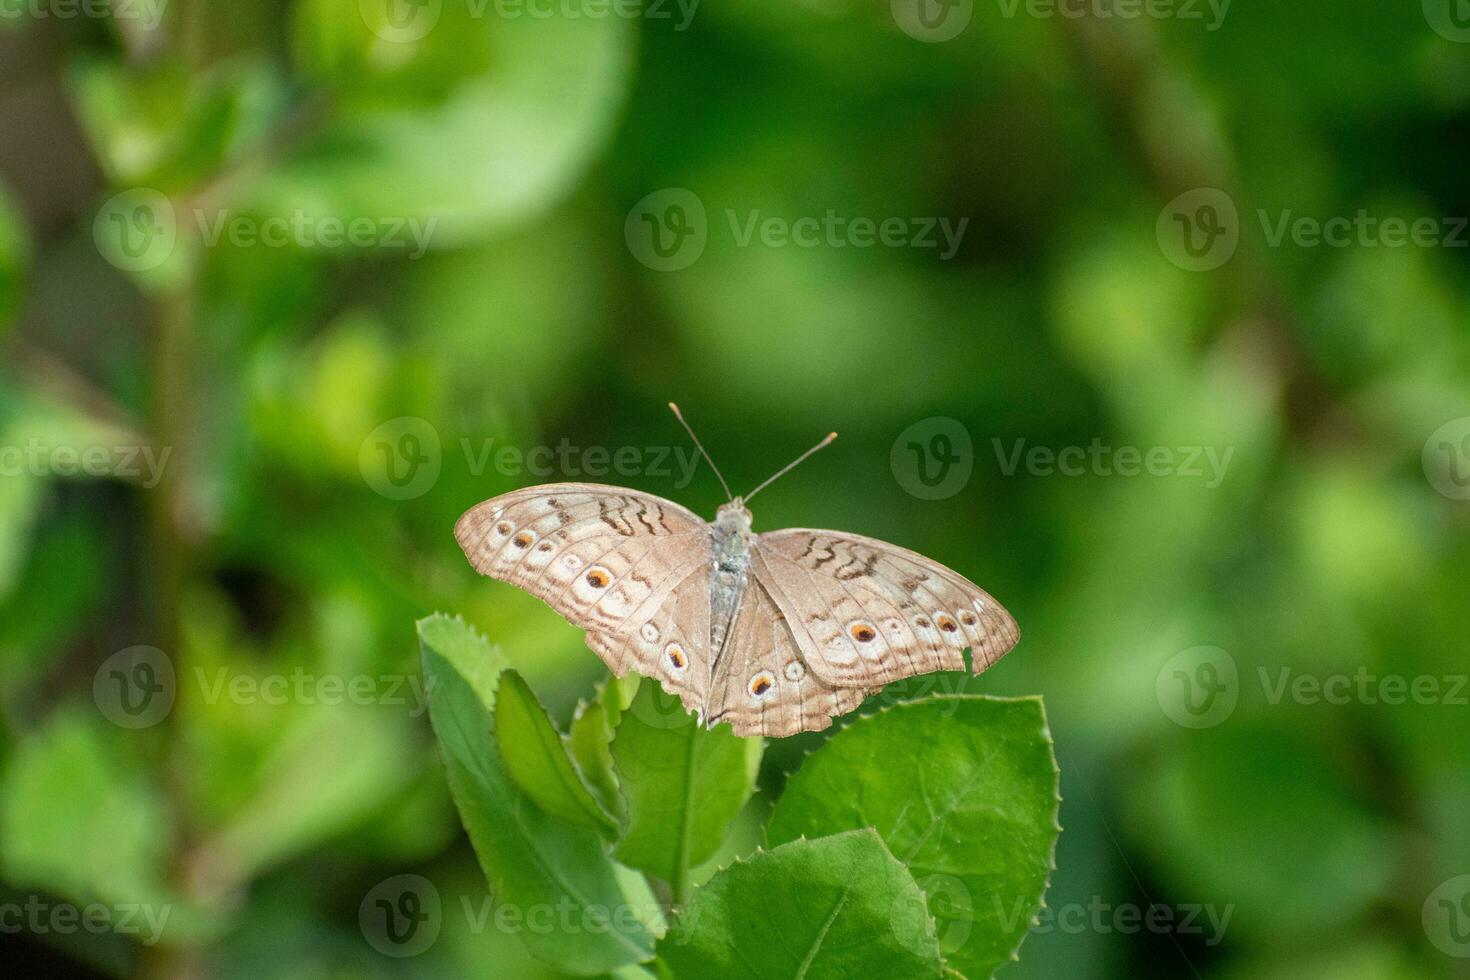 grijs viooltje vlinder met verspreiding Vleugels. junonia atlieten neergestreken Aan oorzaak trifolia blad foto